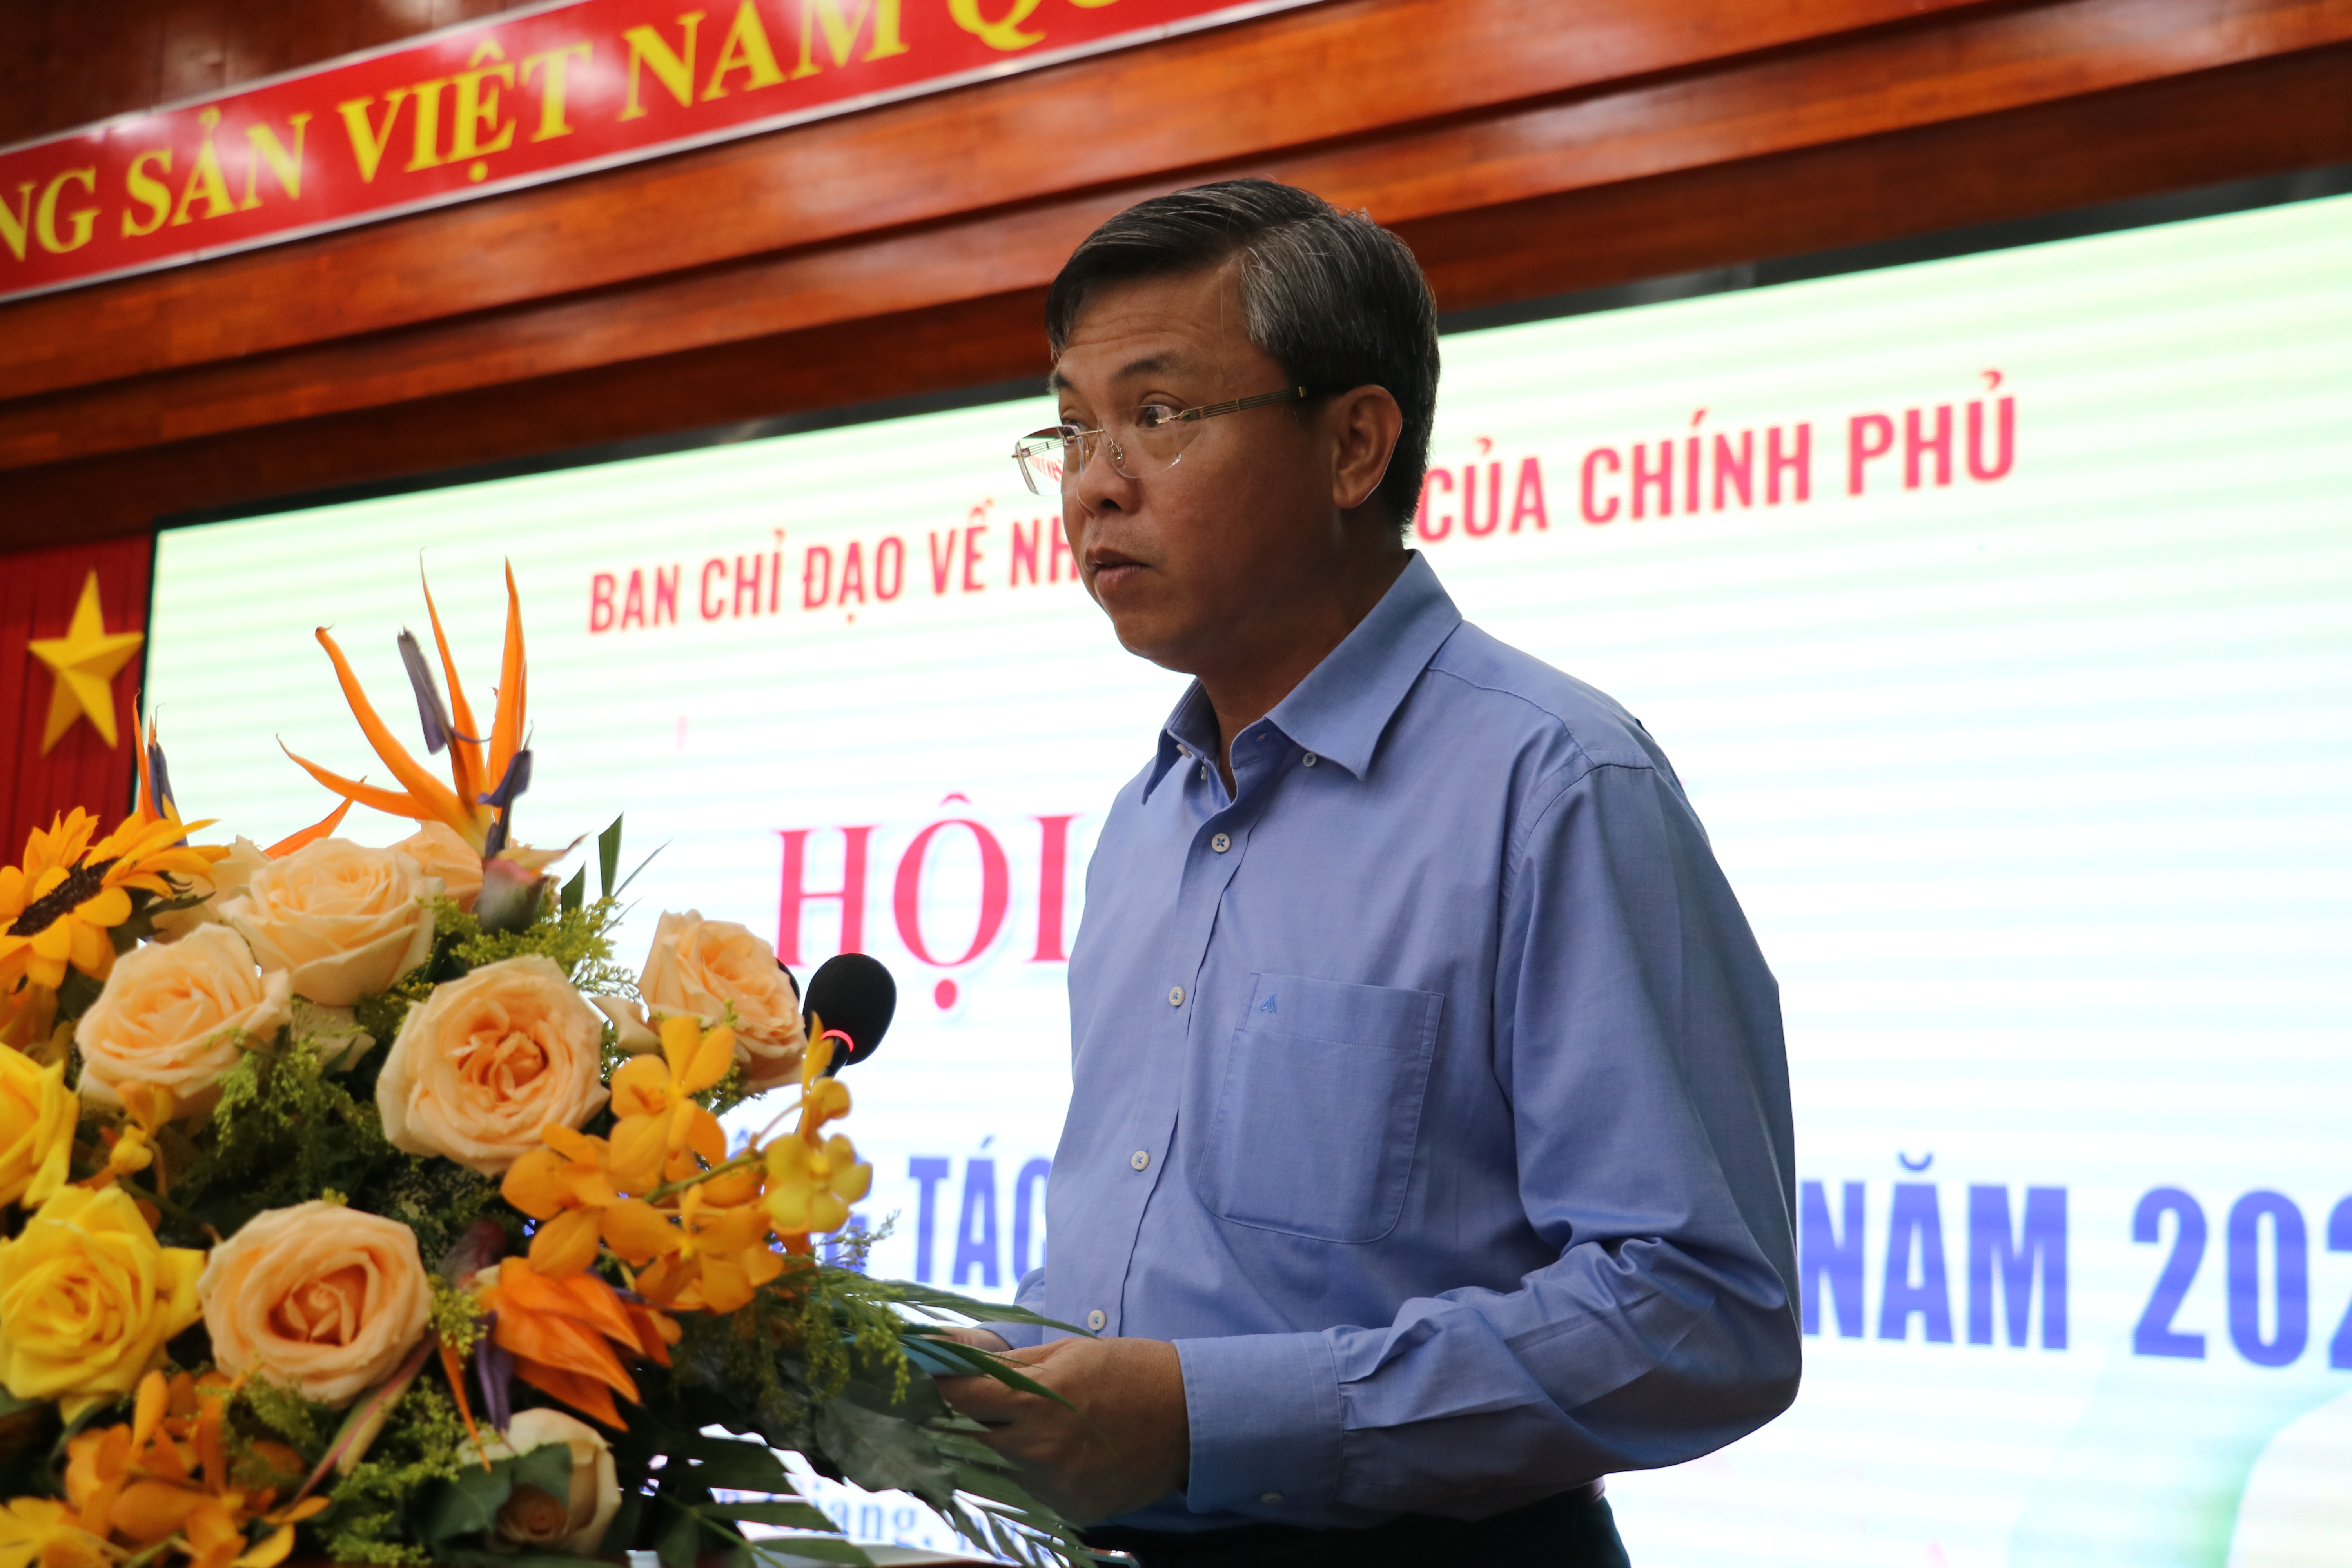 Đồng chí Nguyễn Lưu Trung, Phó Chủ tịch UBND, Trưởng Ban Chỉ đạo Nhân quyền tỉnh Kiên Giang phát biểu chào mừng.